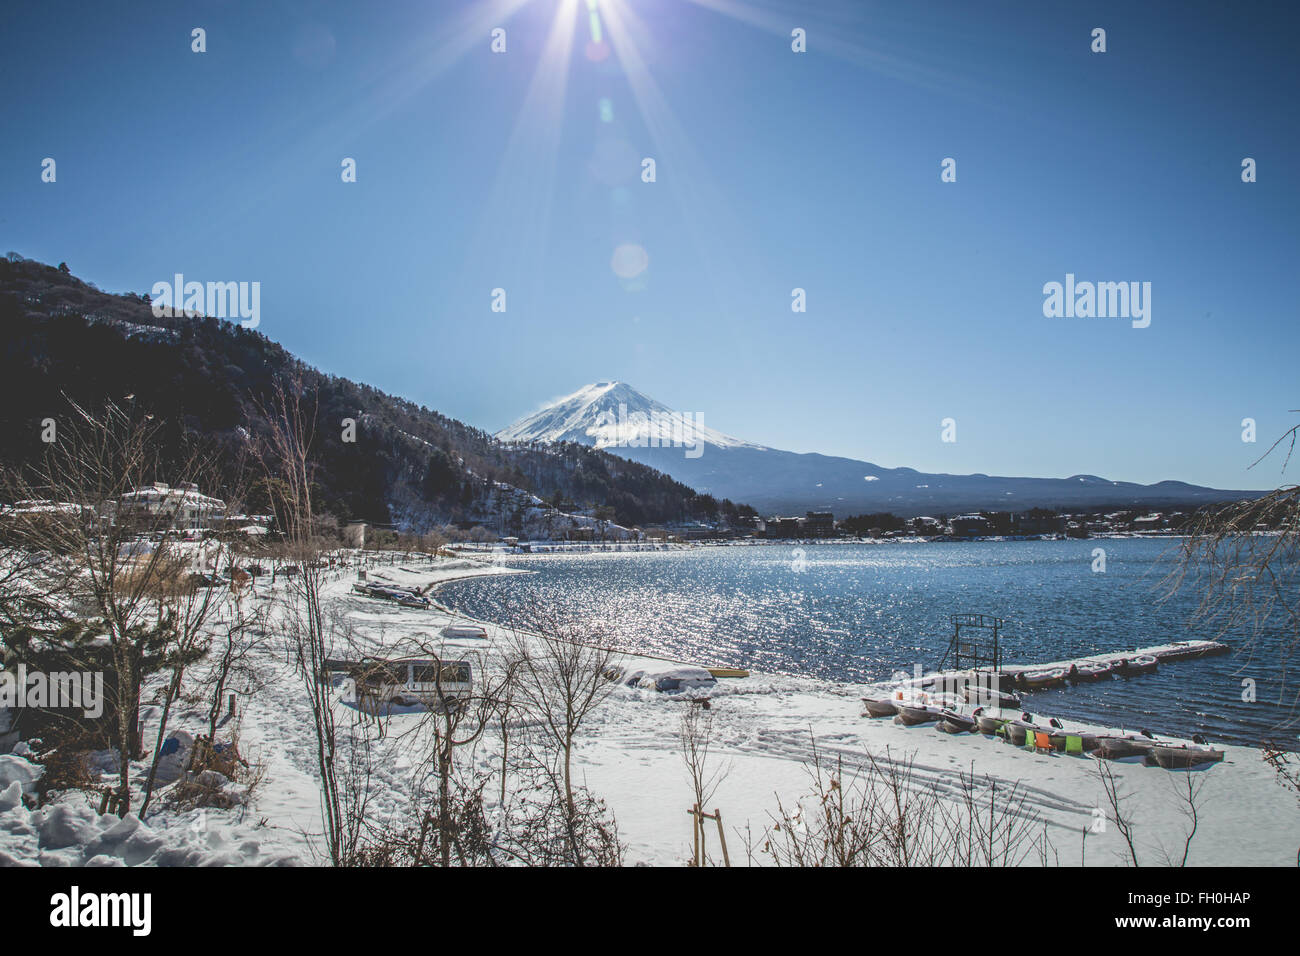 MT. FUJI lake kawaguchiko Stock Photo